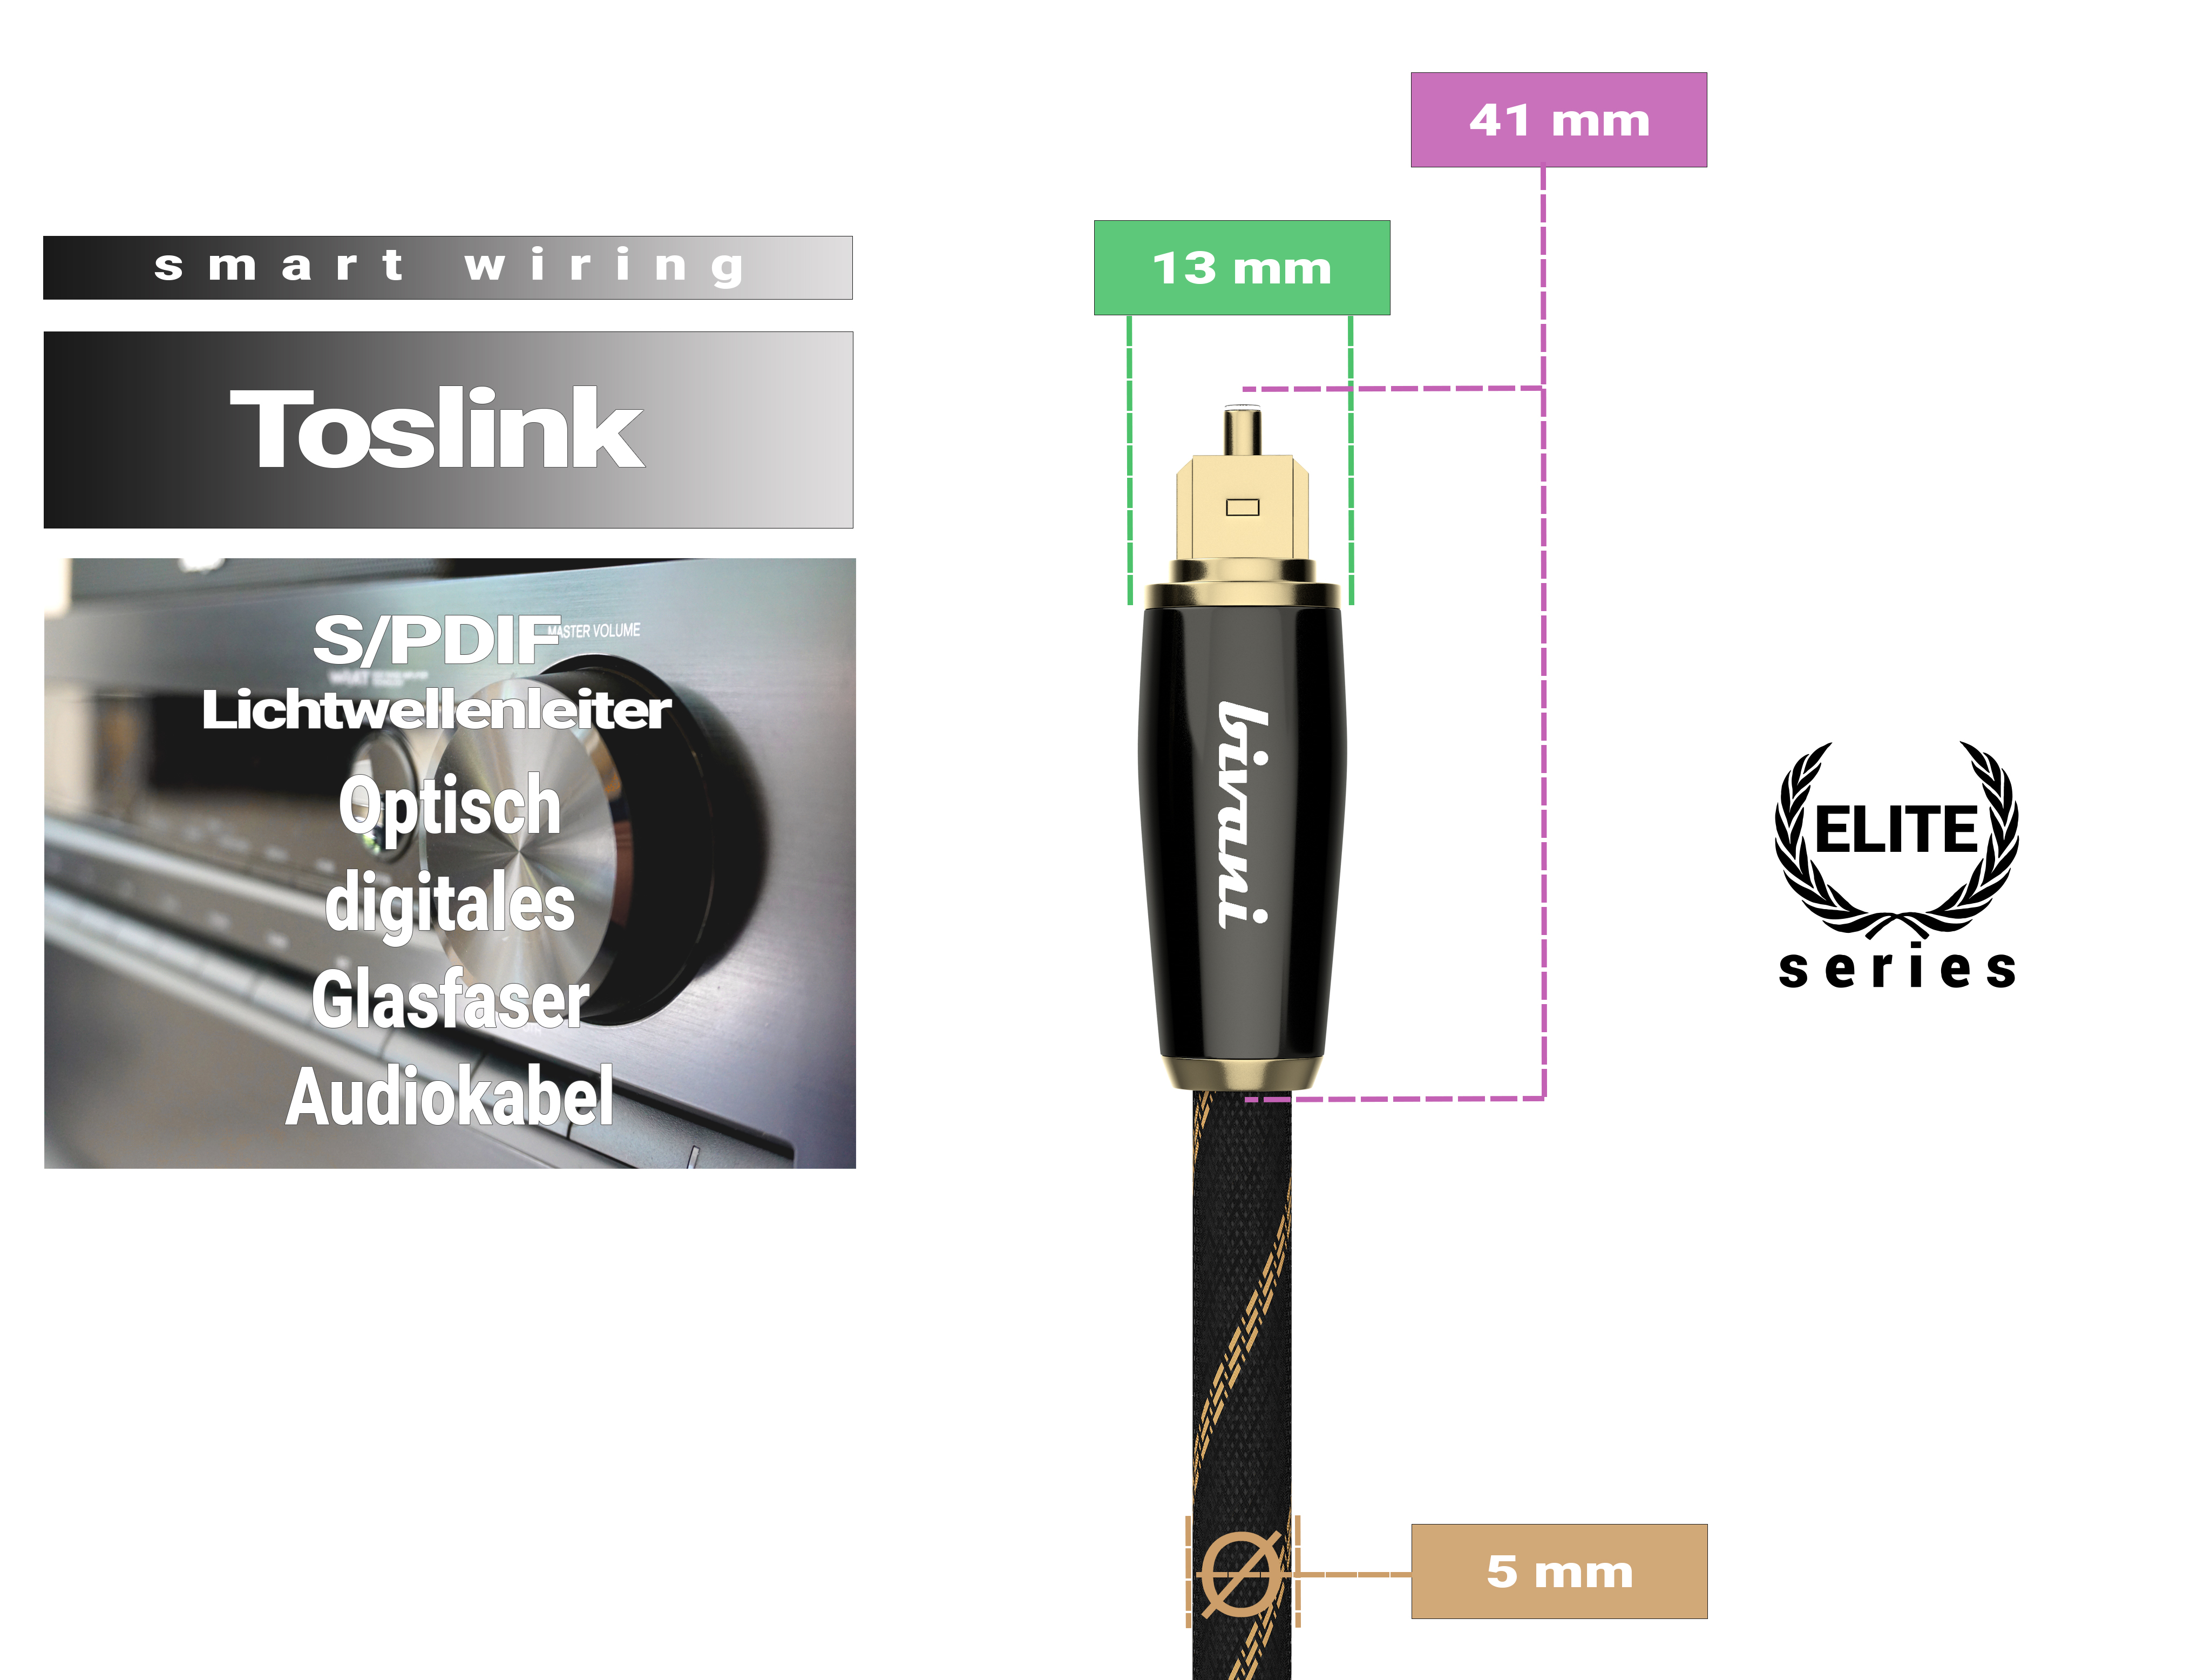 BIVANI Premium optisch 1 m - Toslinkkabel, Elite-Series, digitales Glasfaserkabel